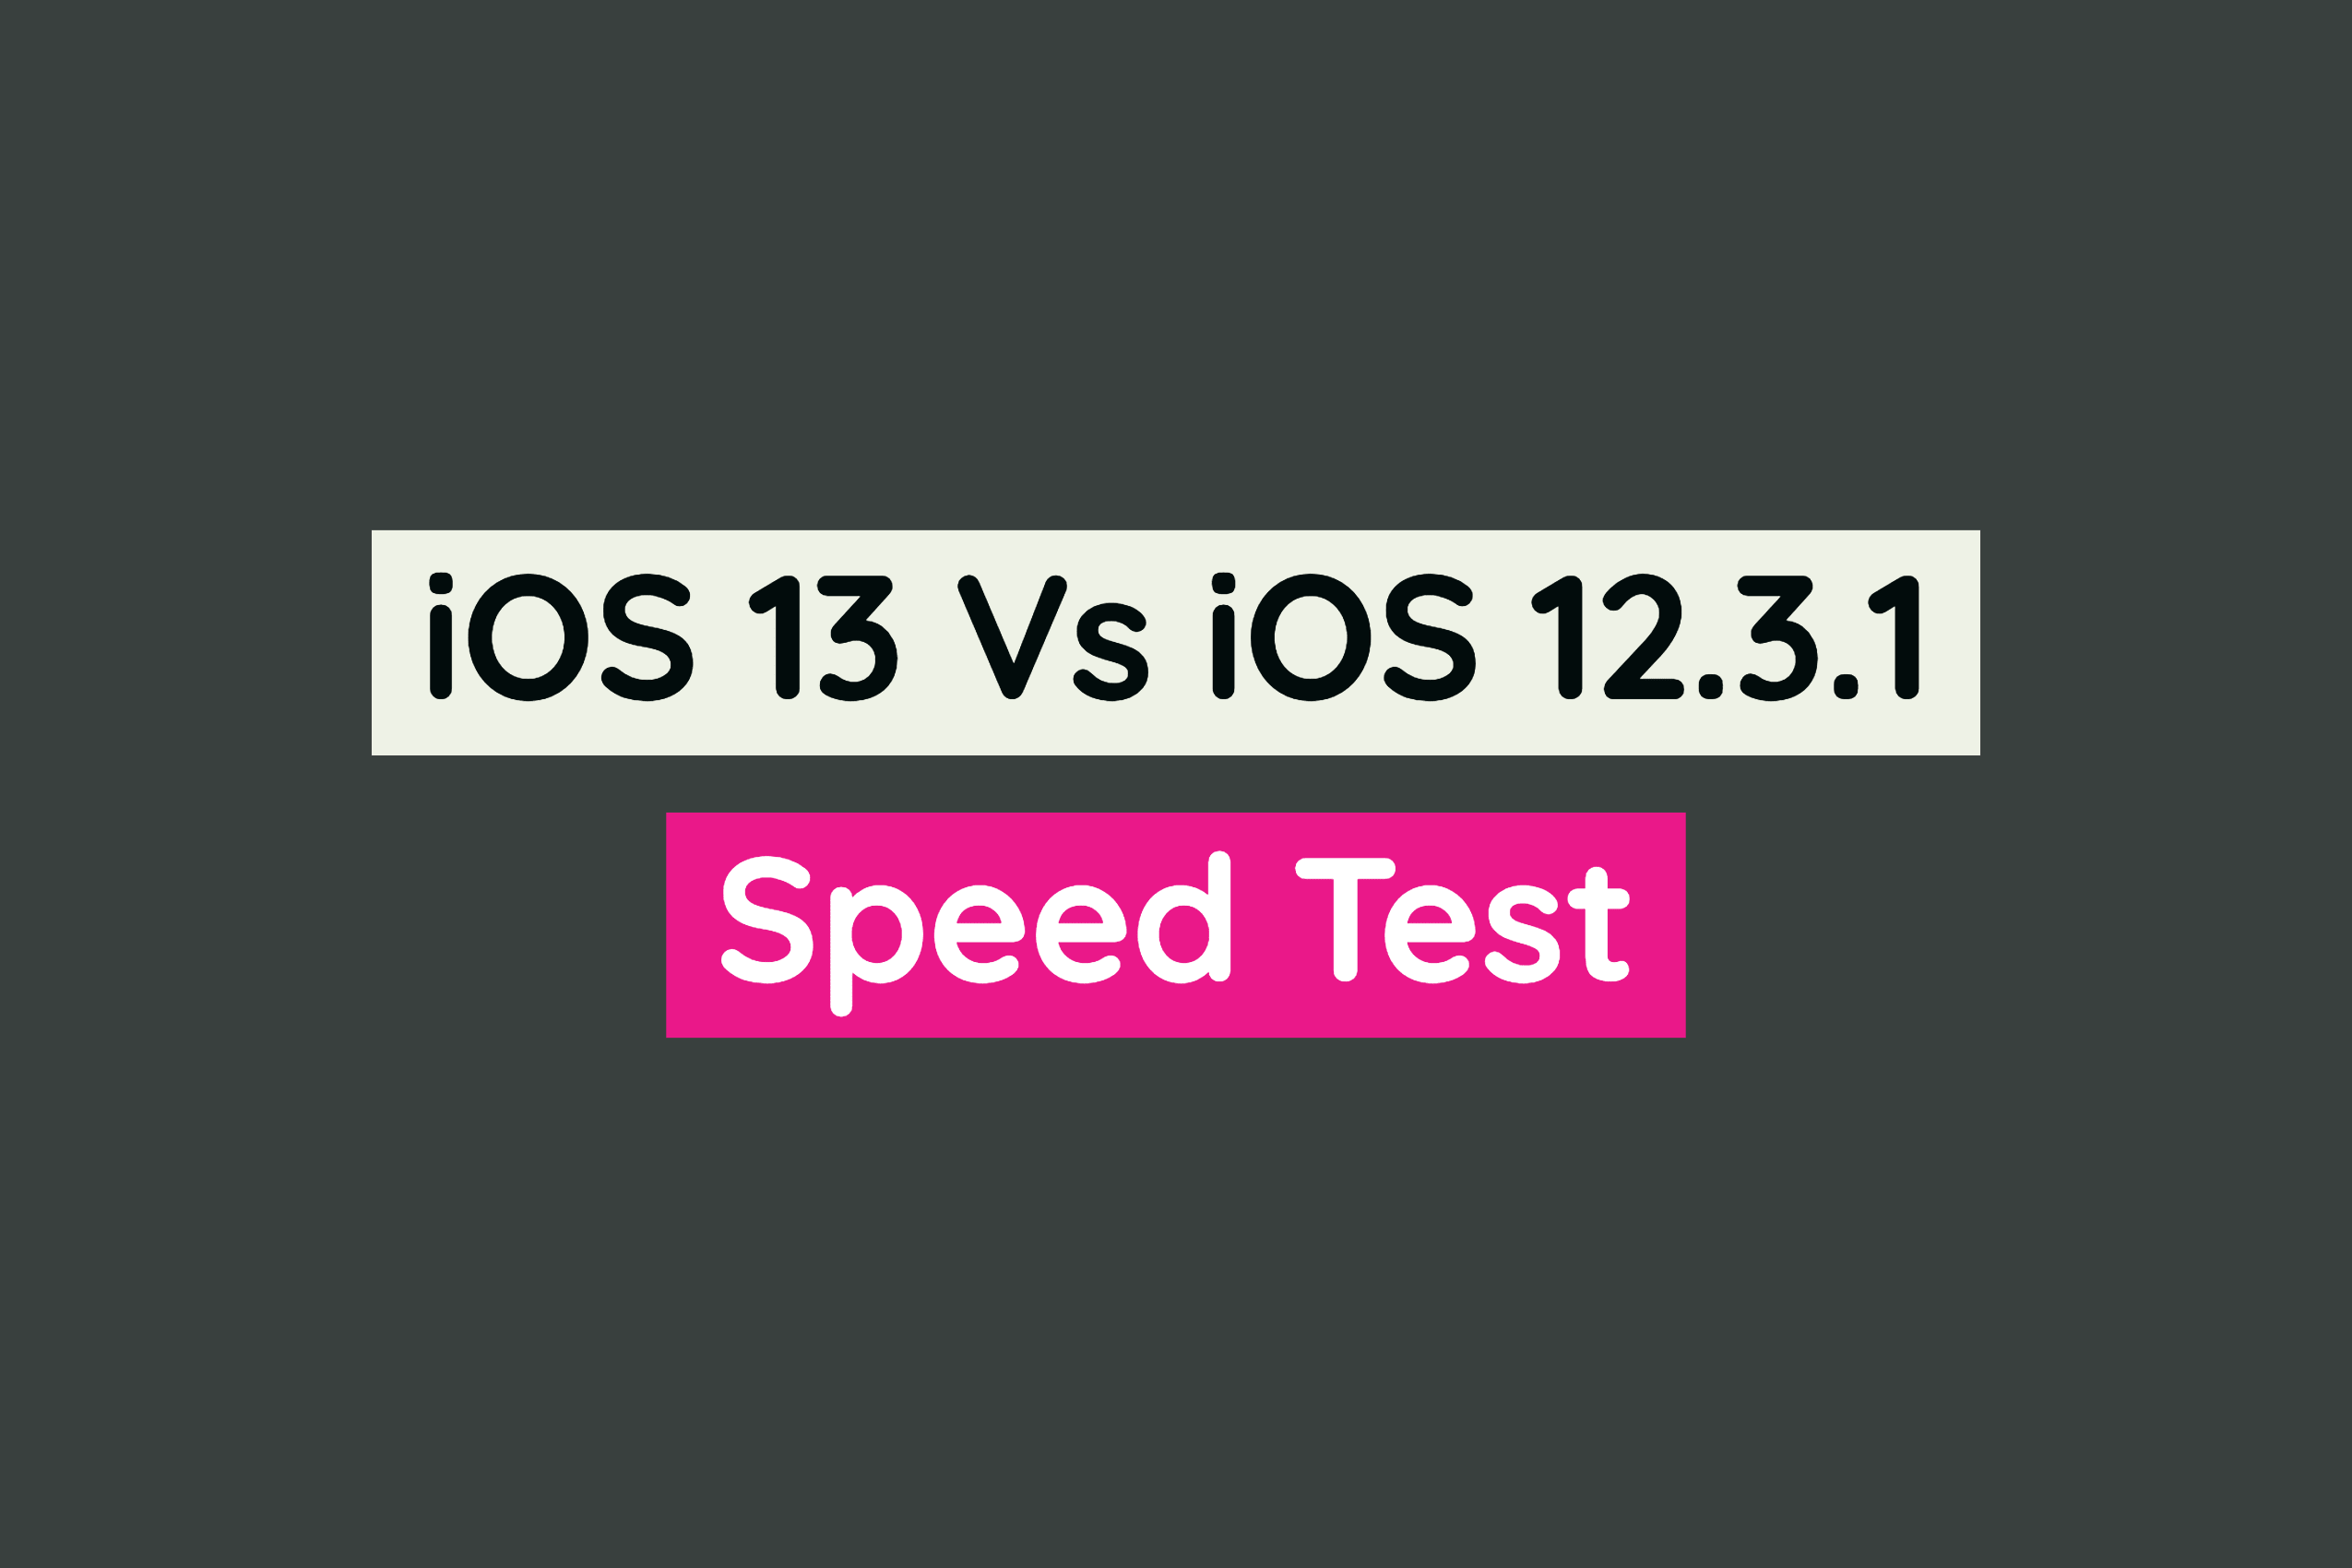 iOS 13 vs iOS 12.3.1